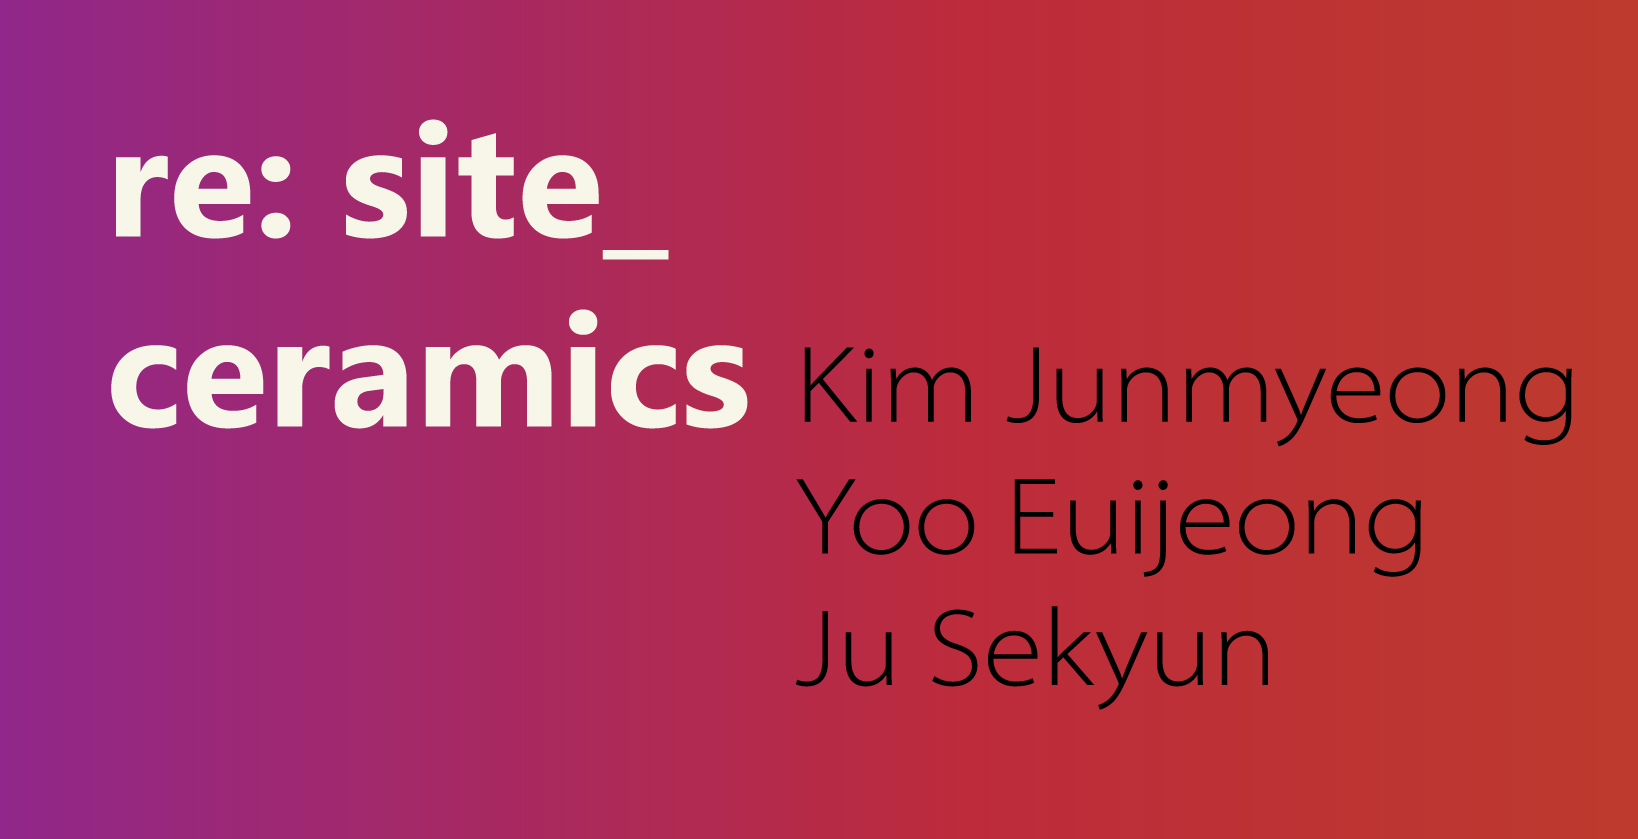 Kim Junmyeong, Yoo Euijeong, Ju Sekyun, re: site_ ceramics